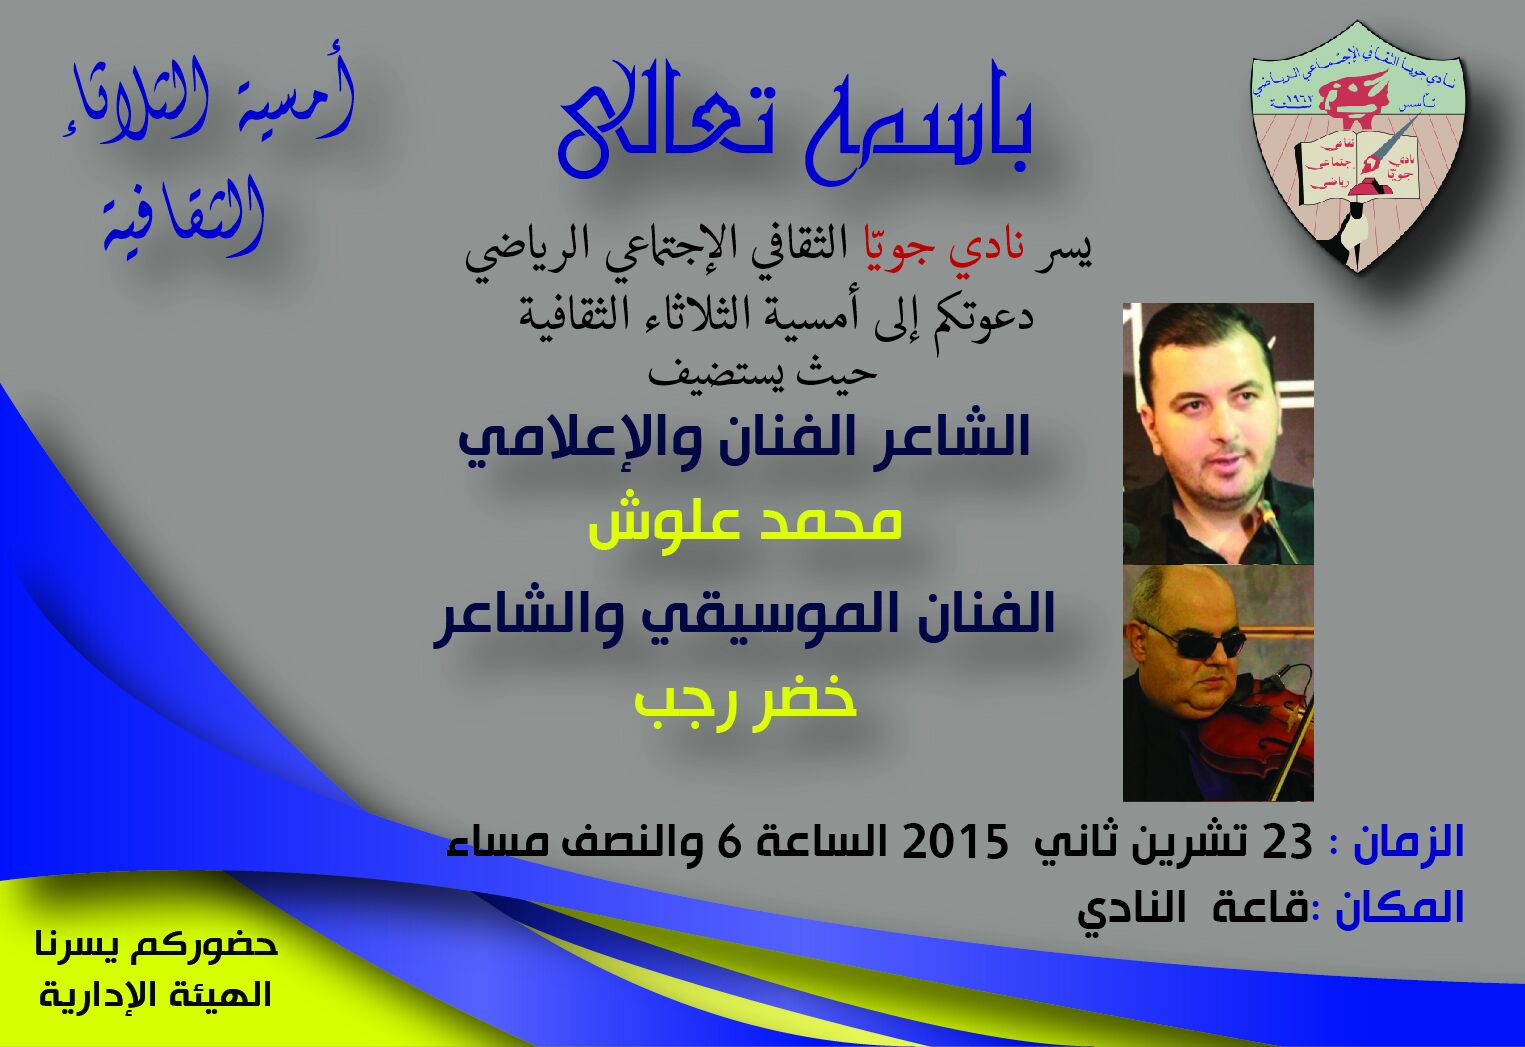 دعوة لحضور أمسية شعرية للشاعر محمد علوش والموسيقي خضر رجب في نادي جويا